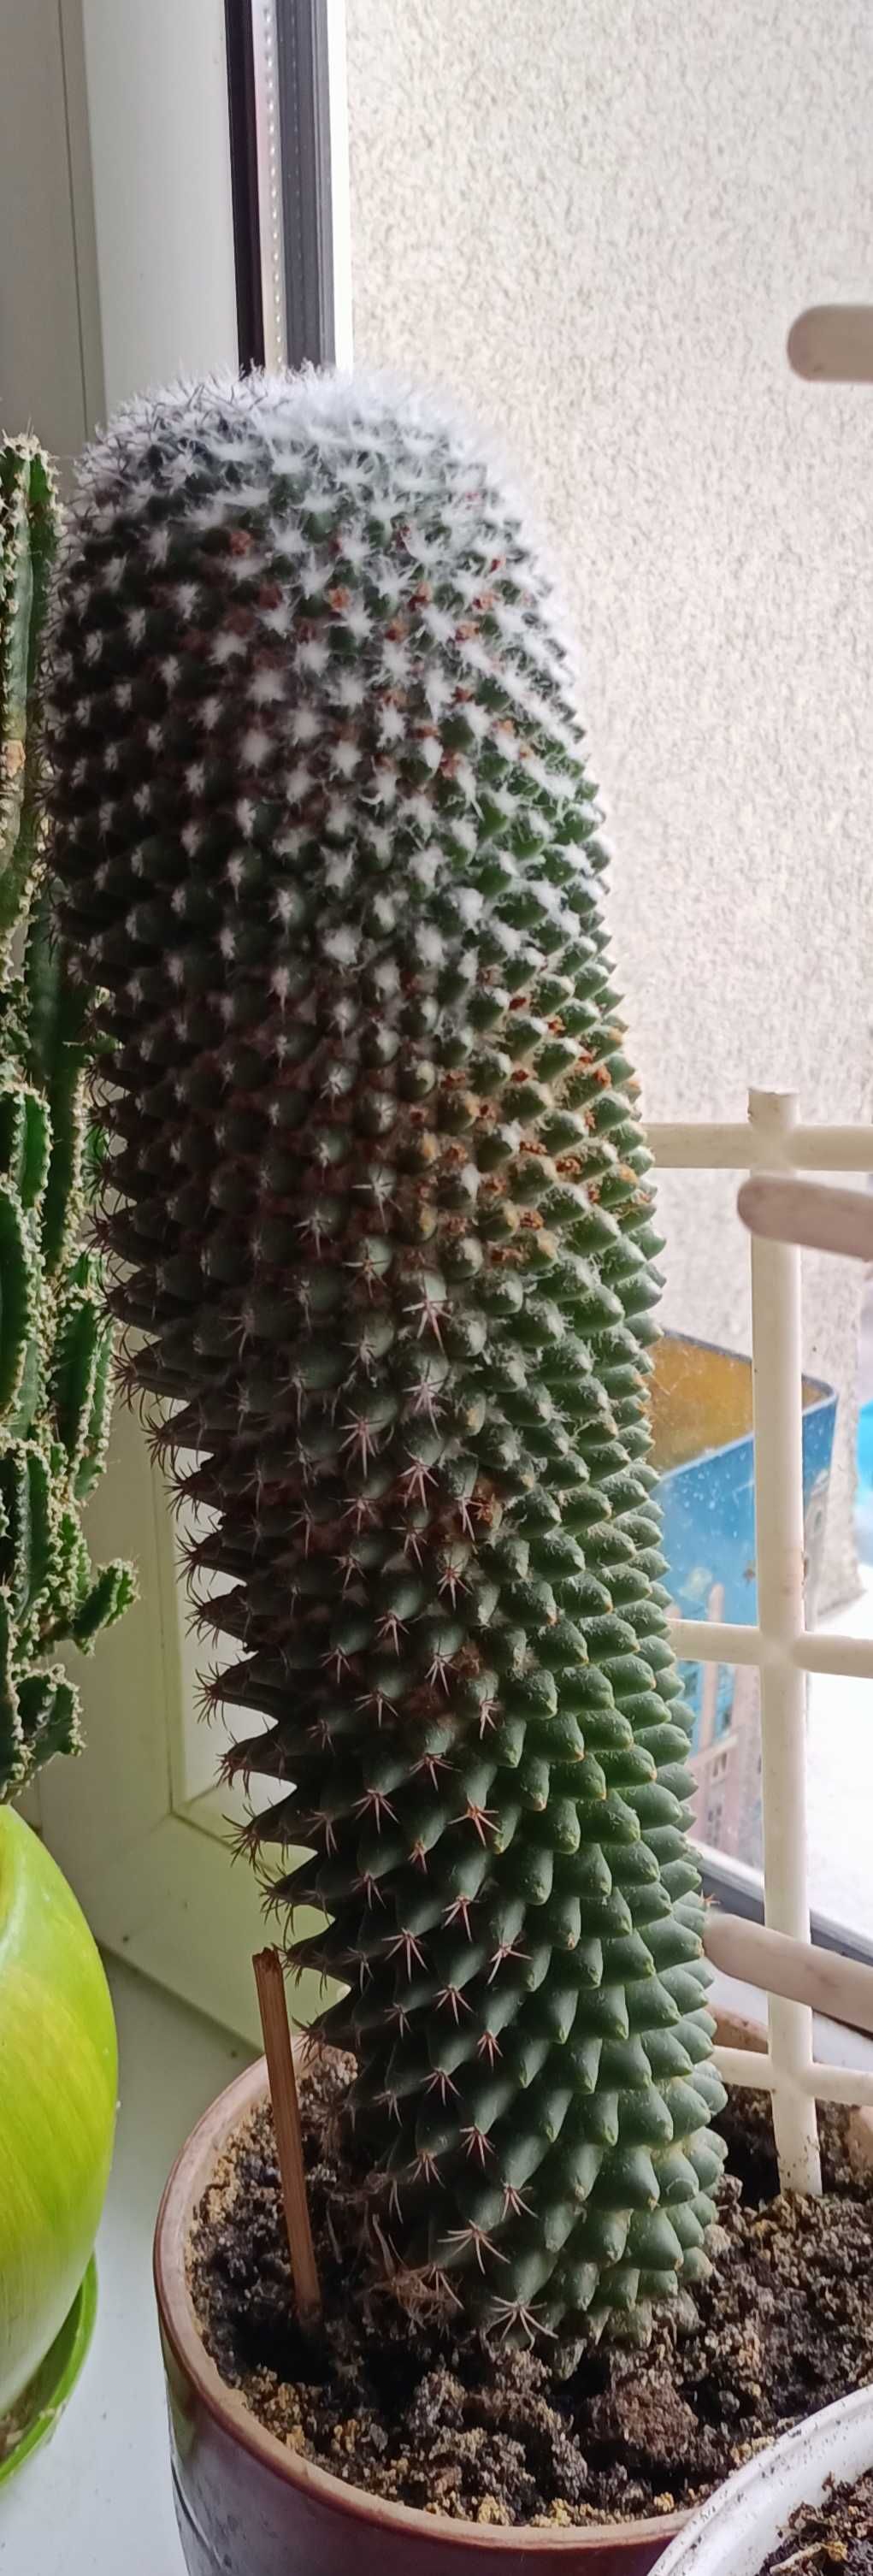 Kaktus z domowej uprawy.